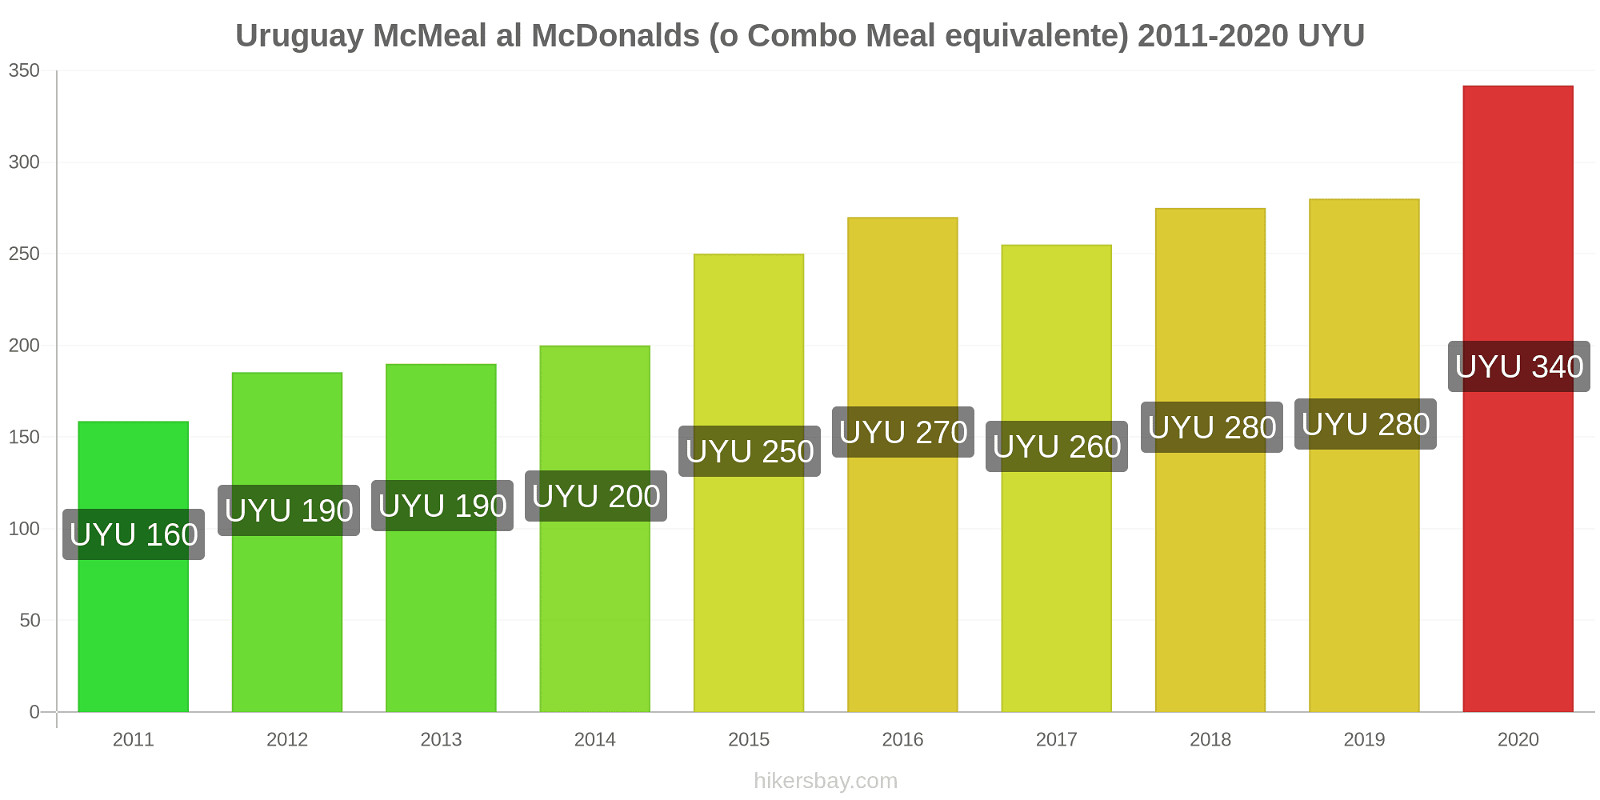 Uruguay variazioni di prezzo McMeal al McDonalds (o in un equivalente fastfood) hikersbay.com